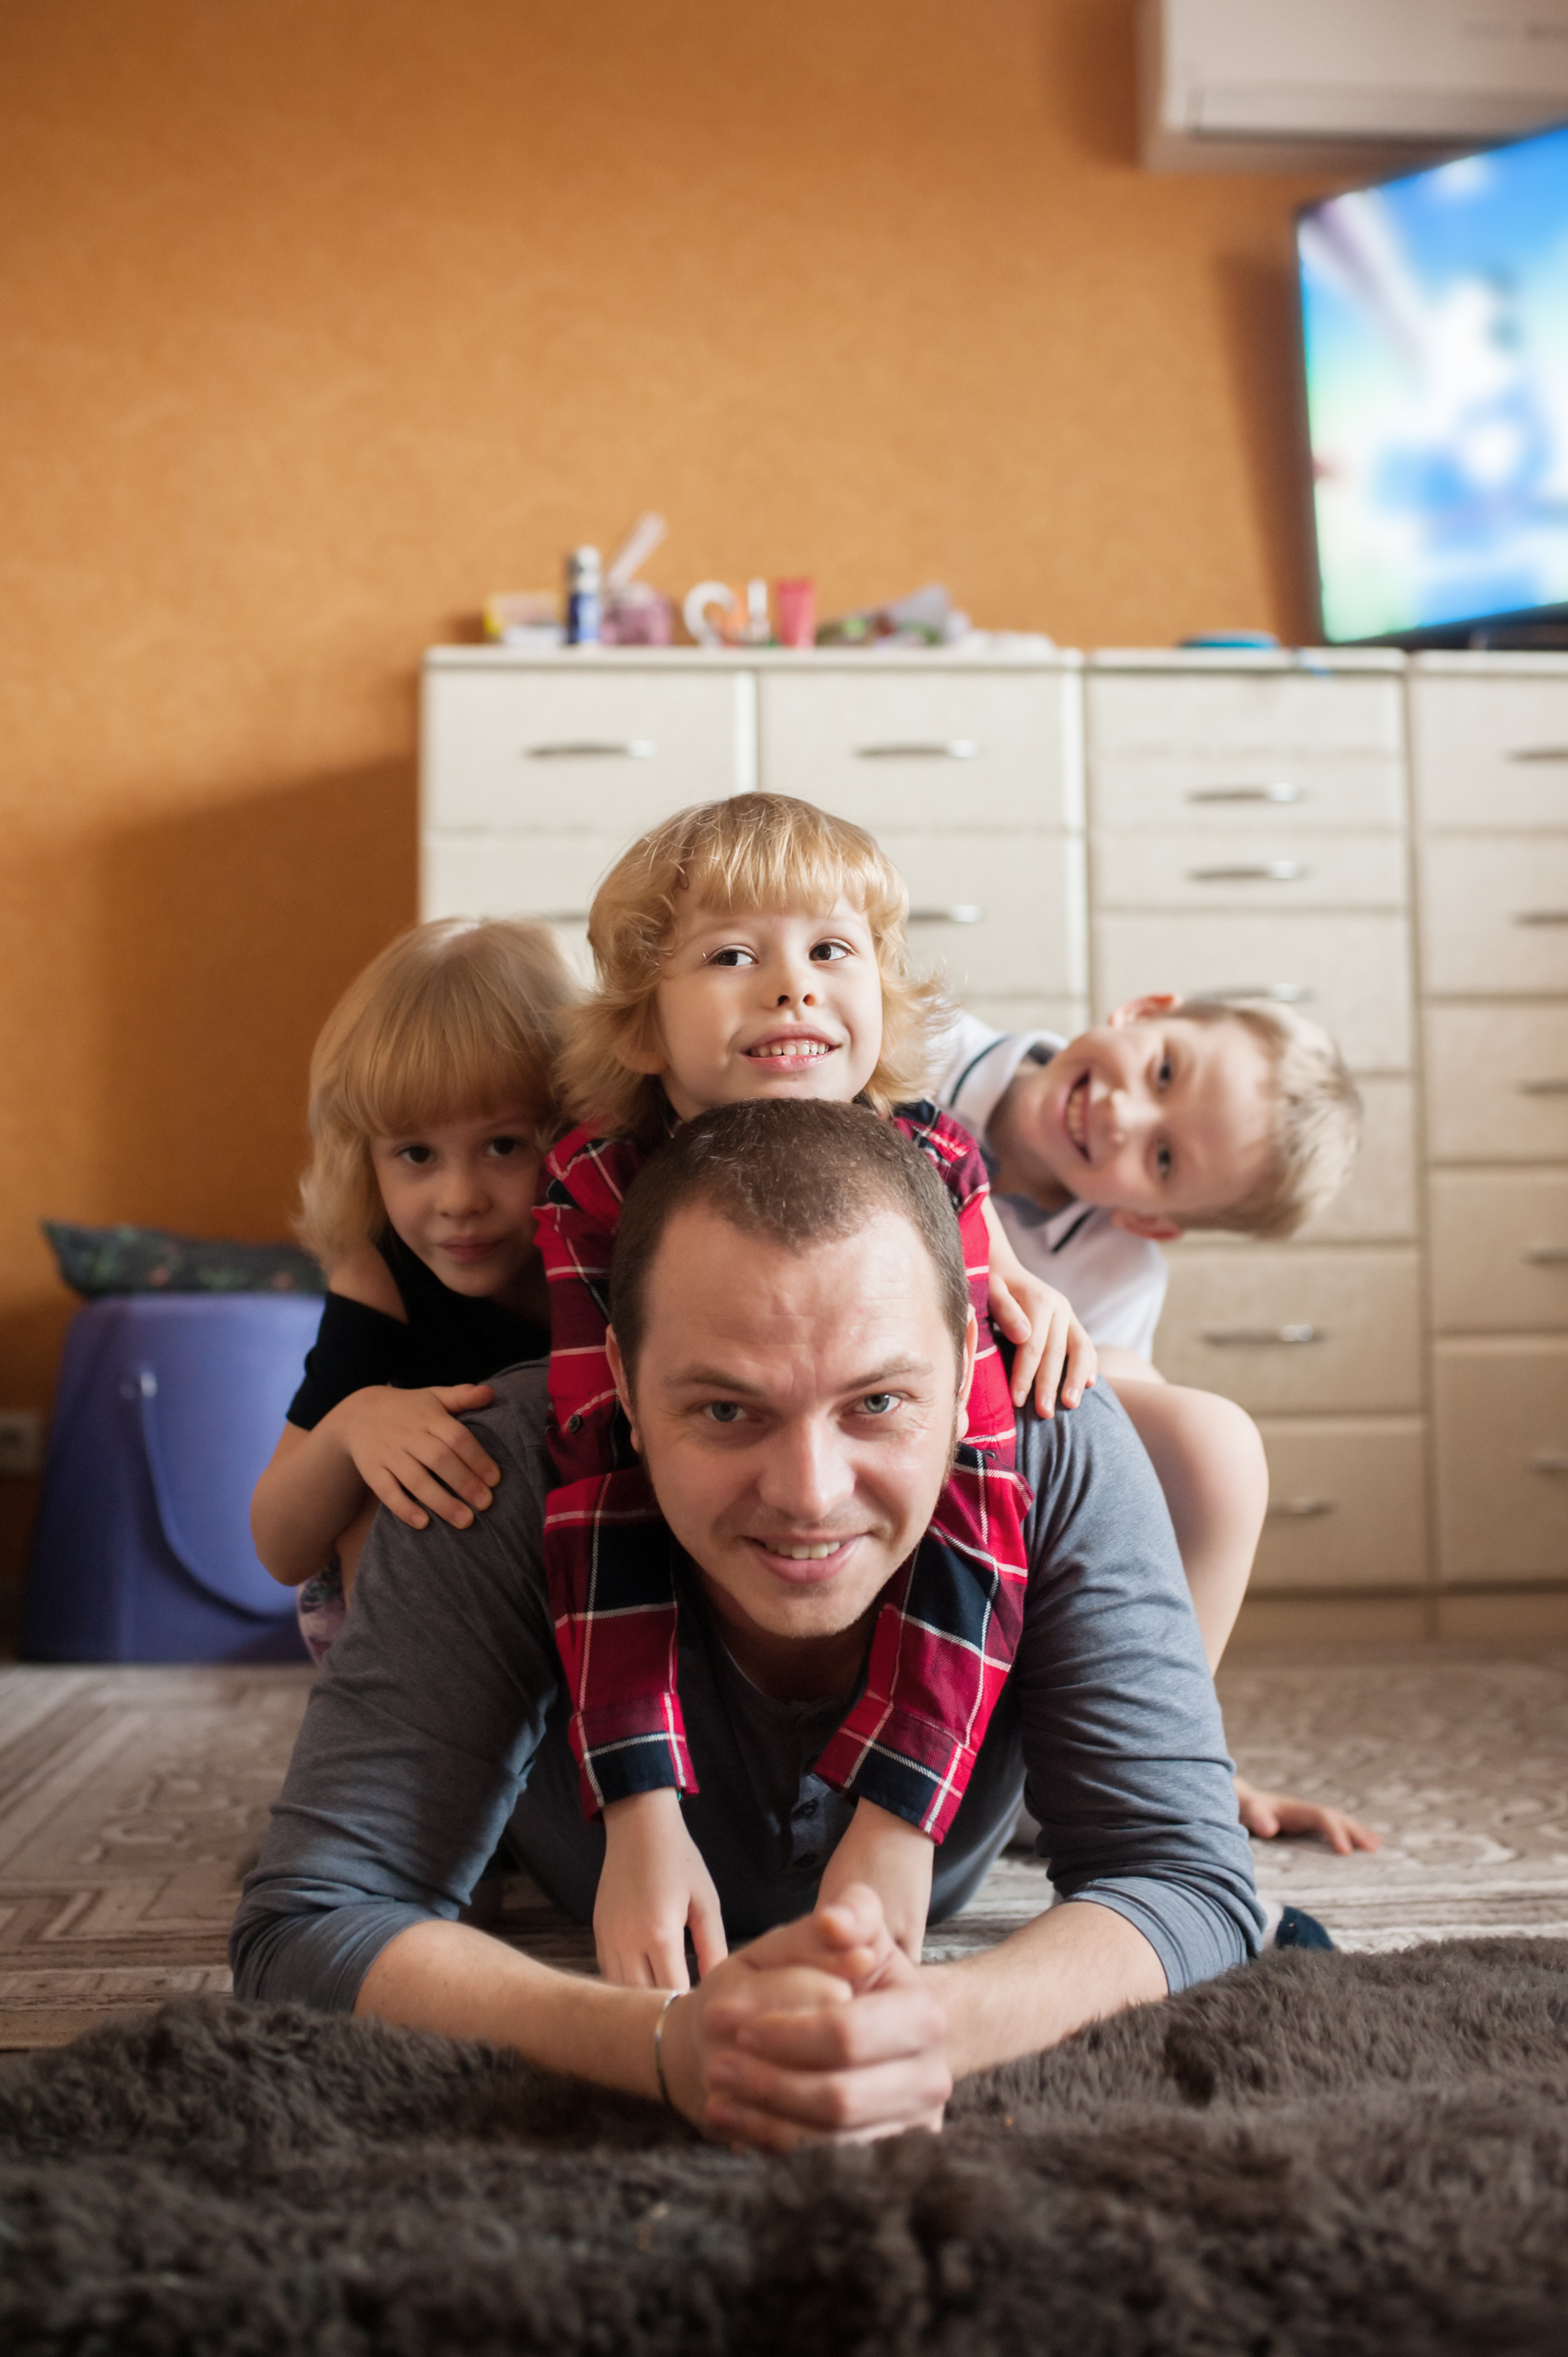 Un père allongé sur le sol avec ses enfants montés sur son dos | Source : Shutterstock